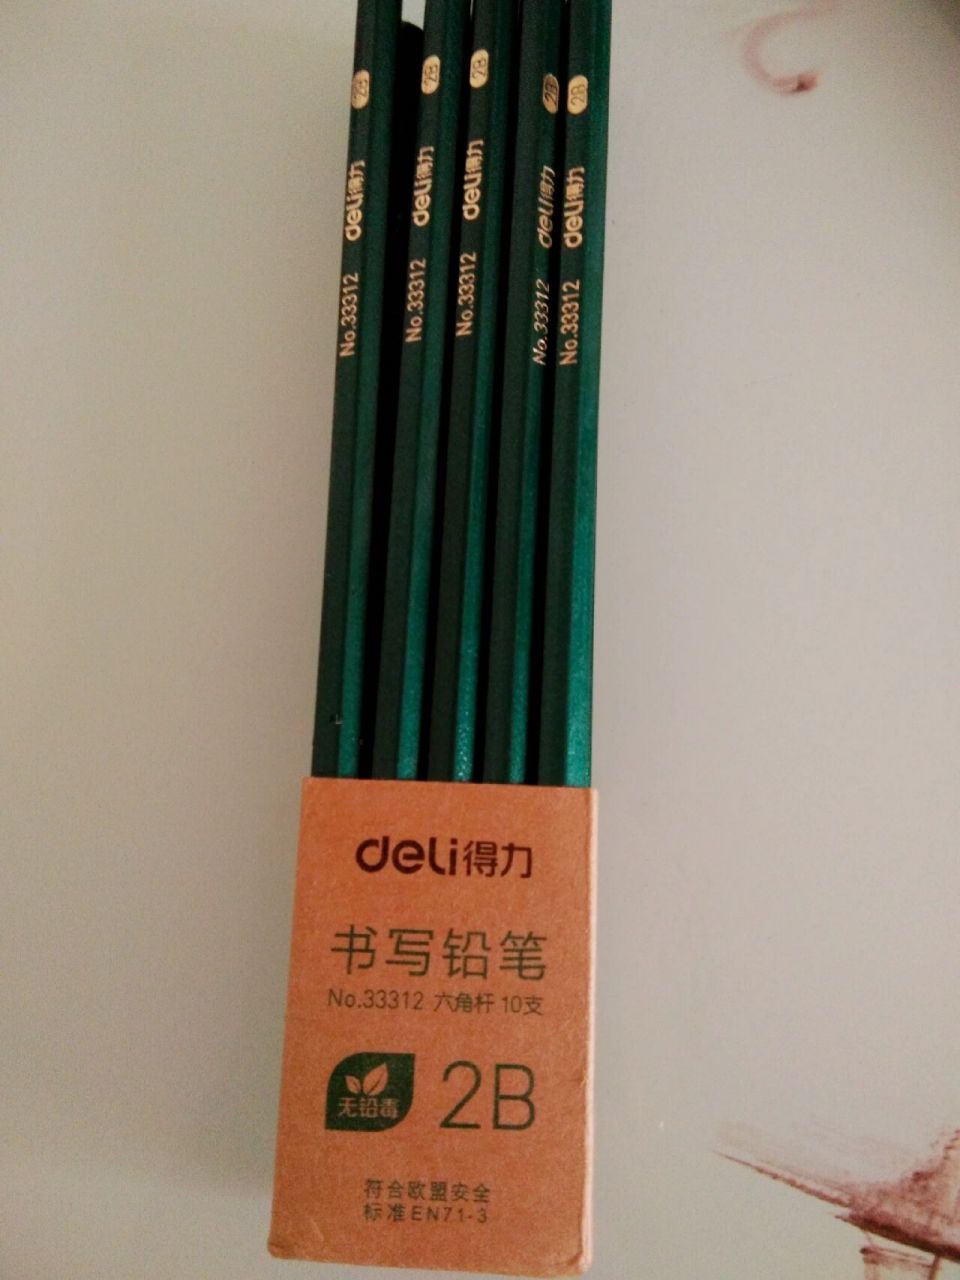 有人帮忙鉴定一下这是正规的2b铅笔吗?